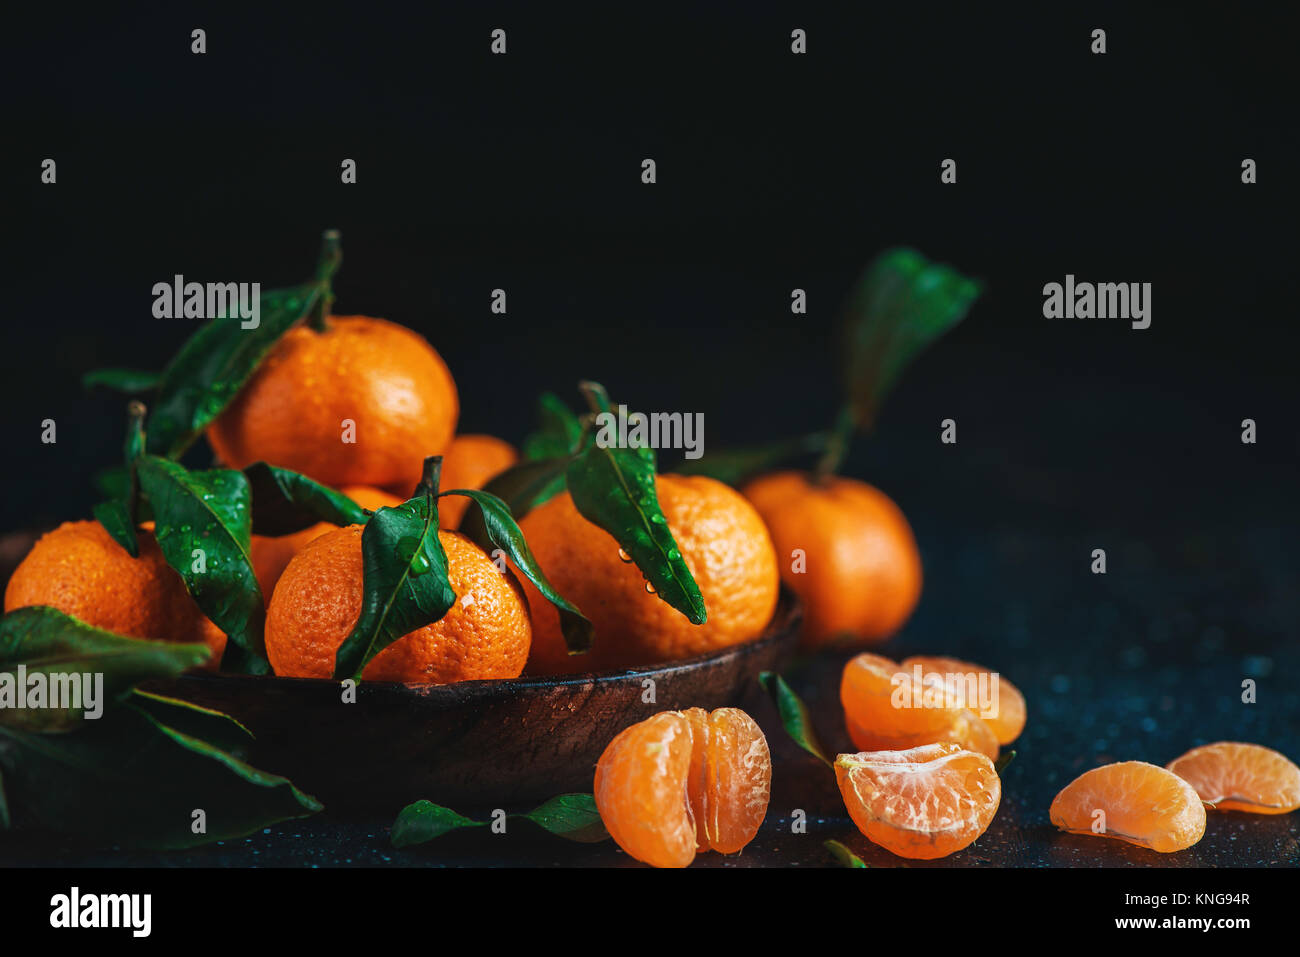 Agrumi su un piatto di legno con foglie verdi. La vibrante tangerini su uno sfondo scuro. Rustico fotografia di cibo. Foto Stock